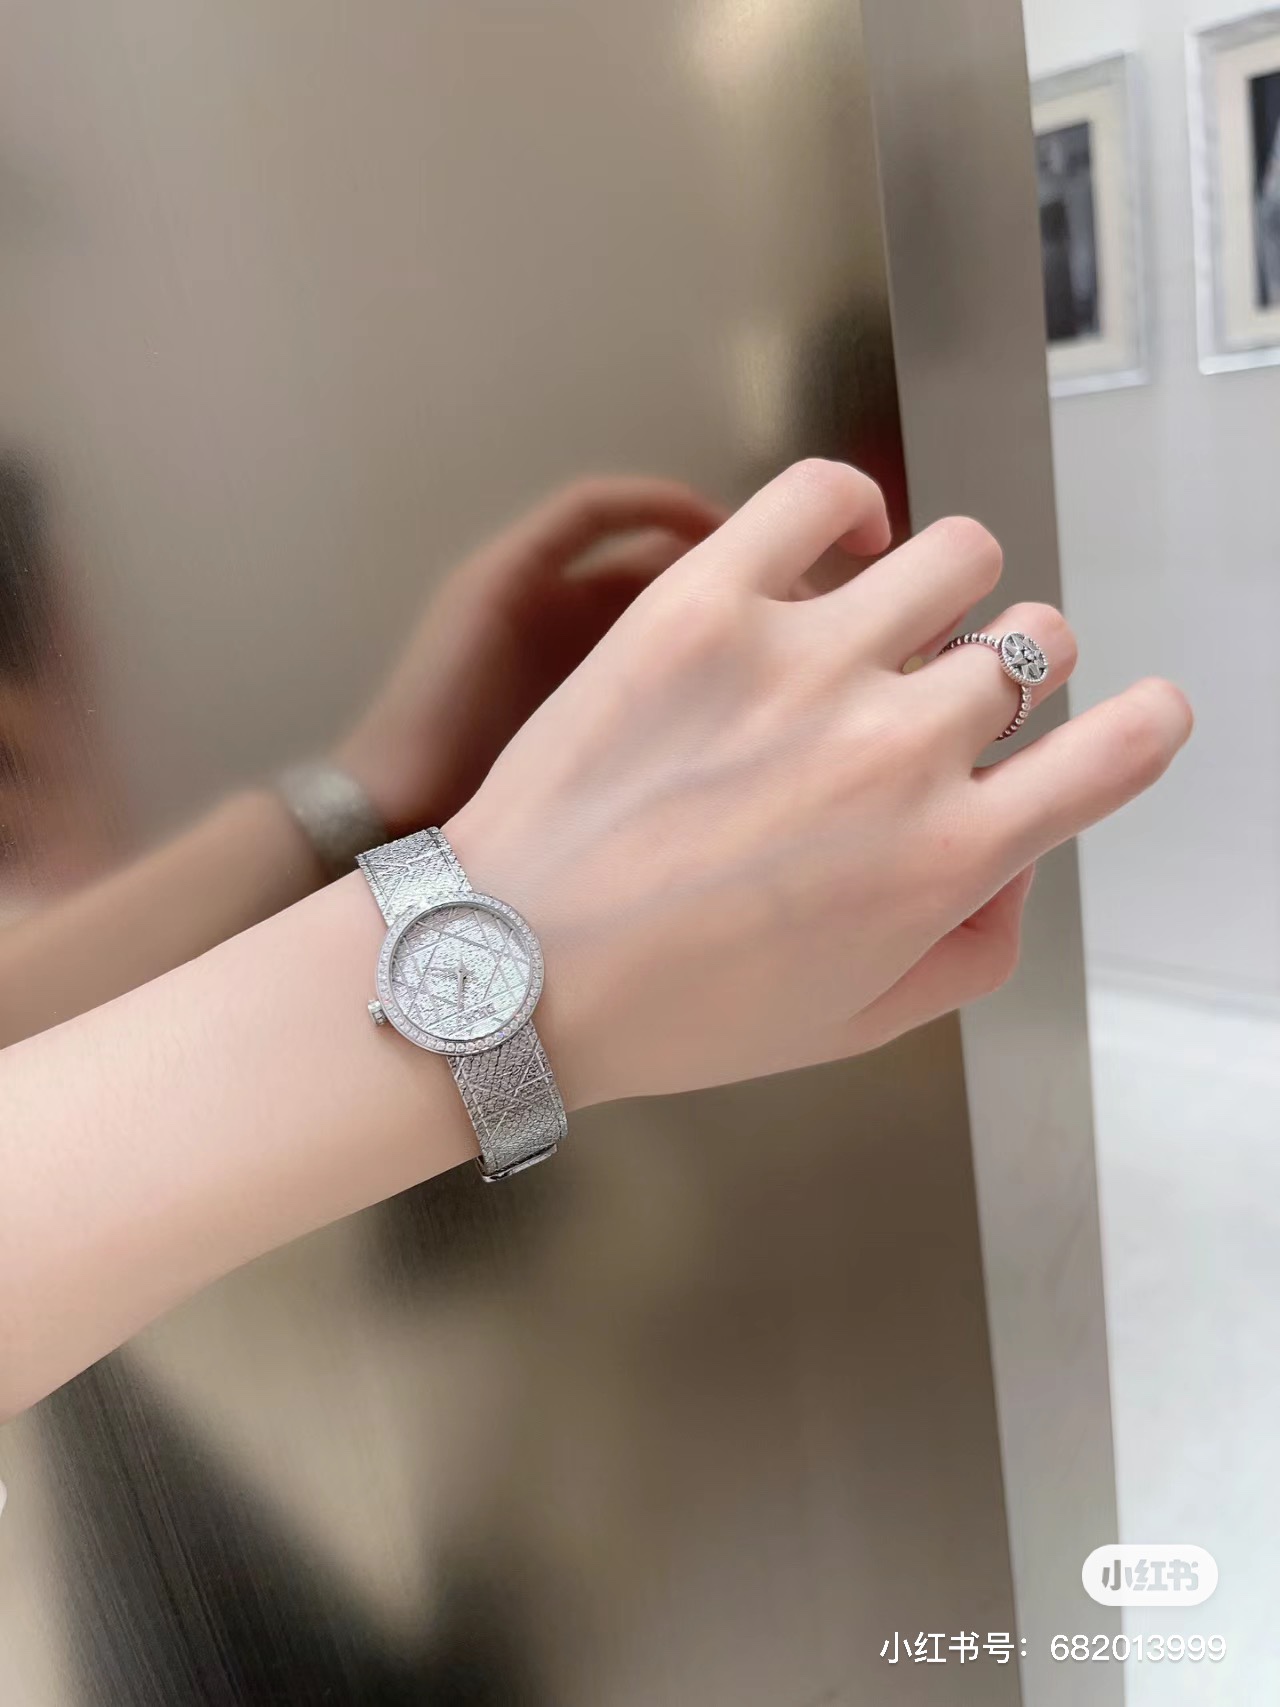 最新作 人気定番 爆買い 腕時計 ディオール偽物 優美な曲線デザイン ダイヤモンド_3